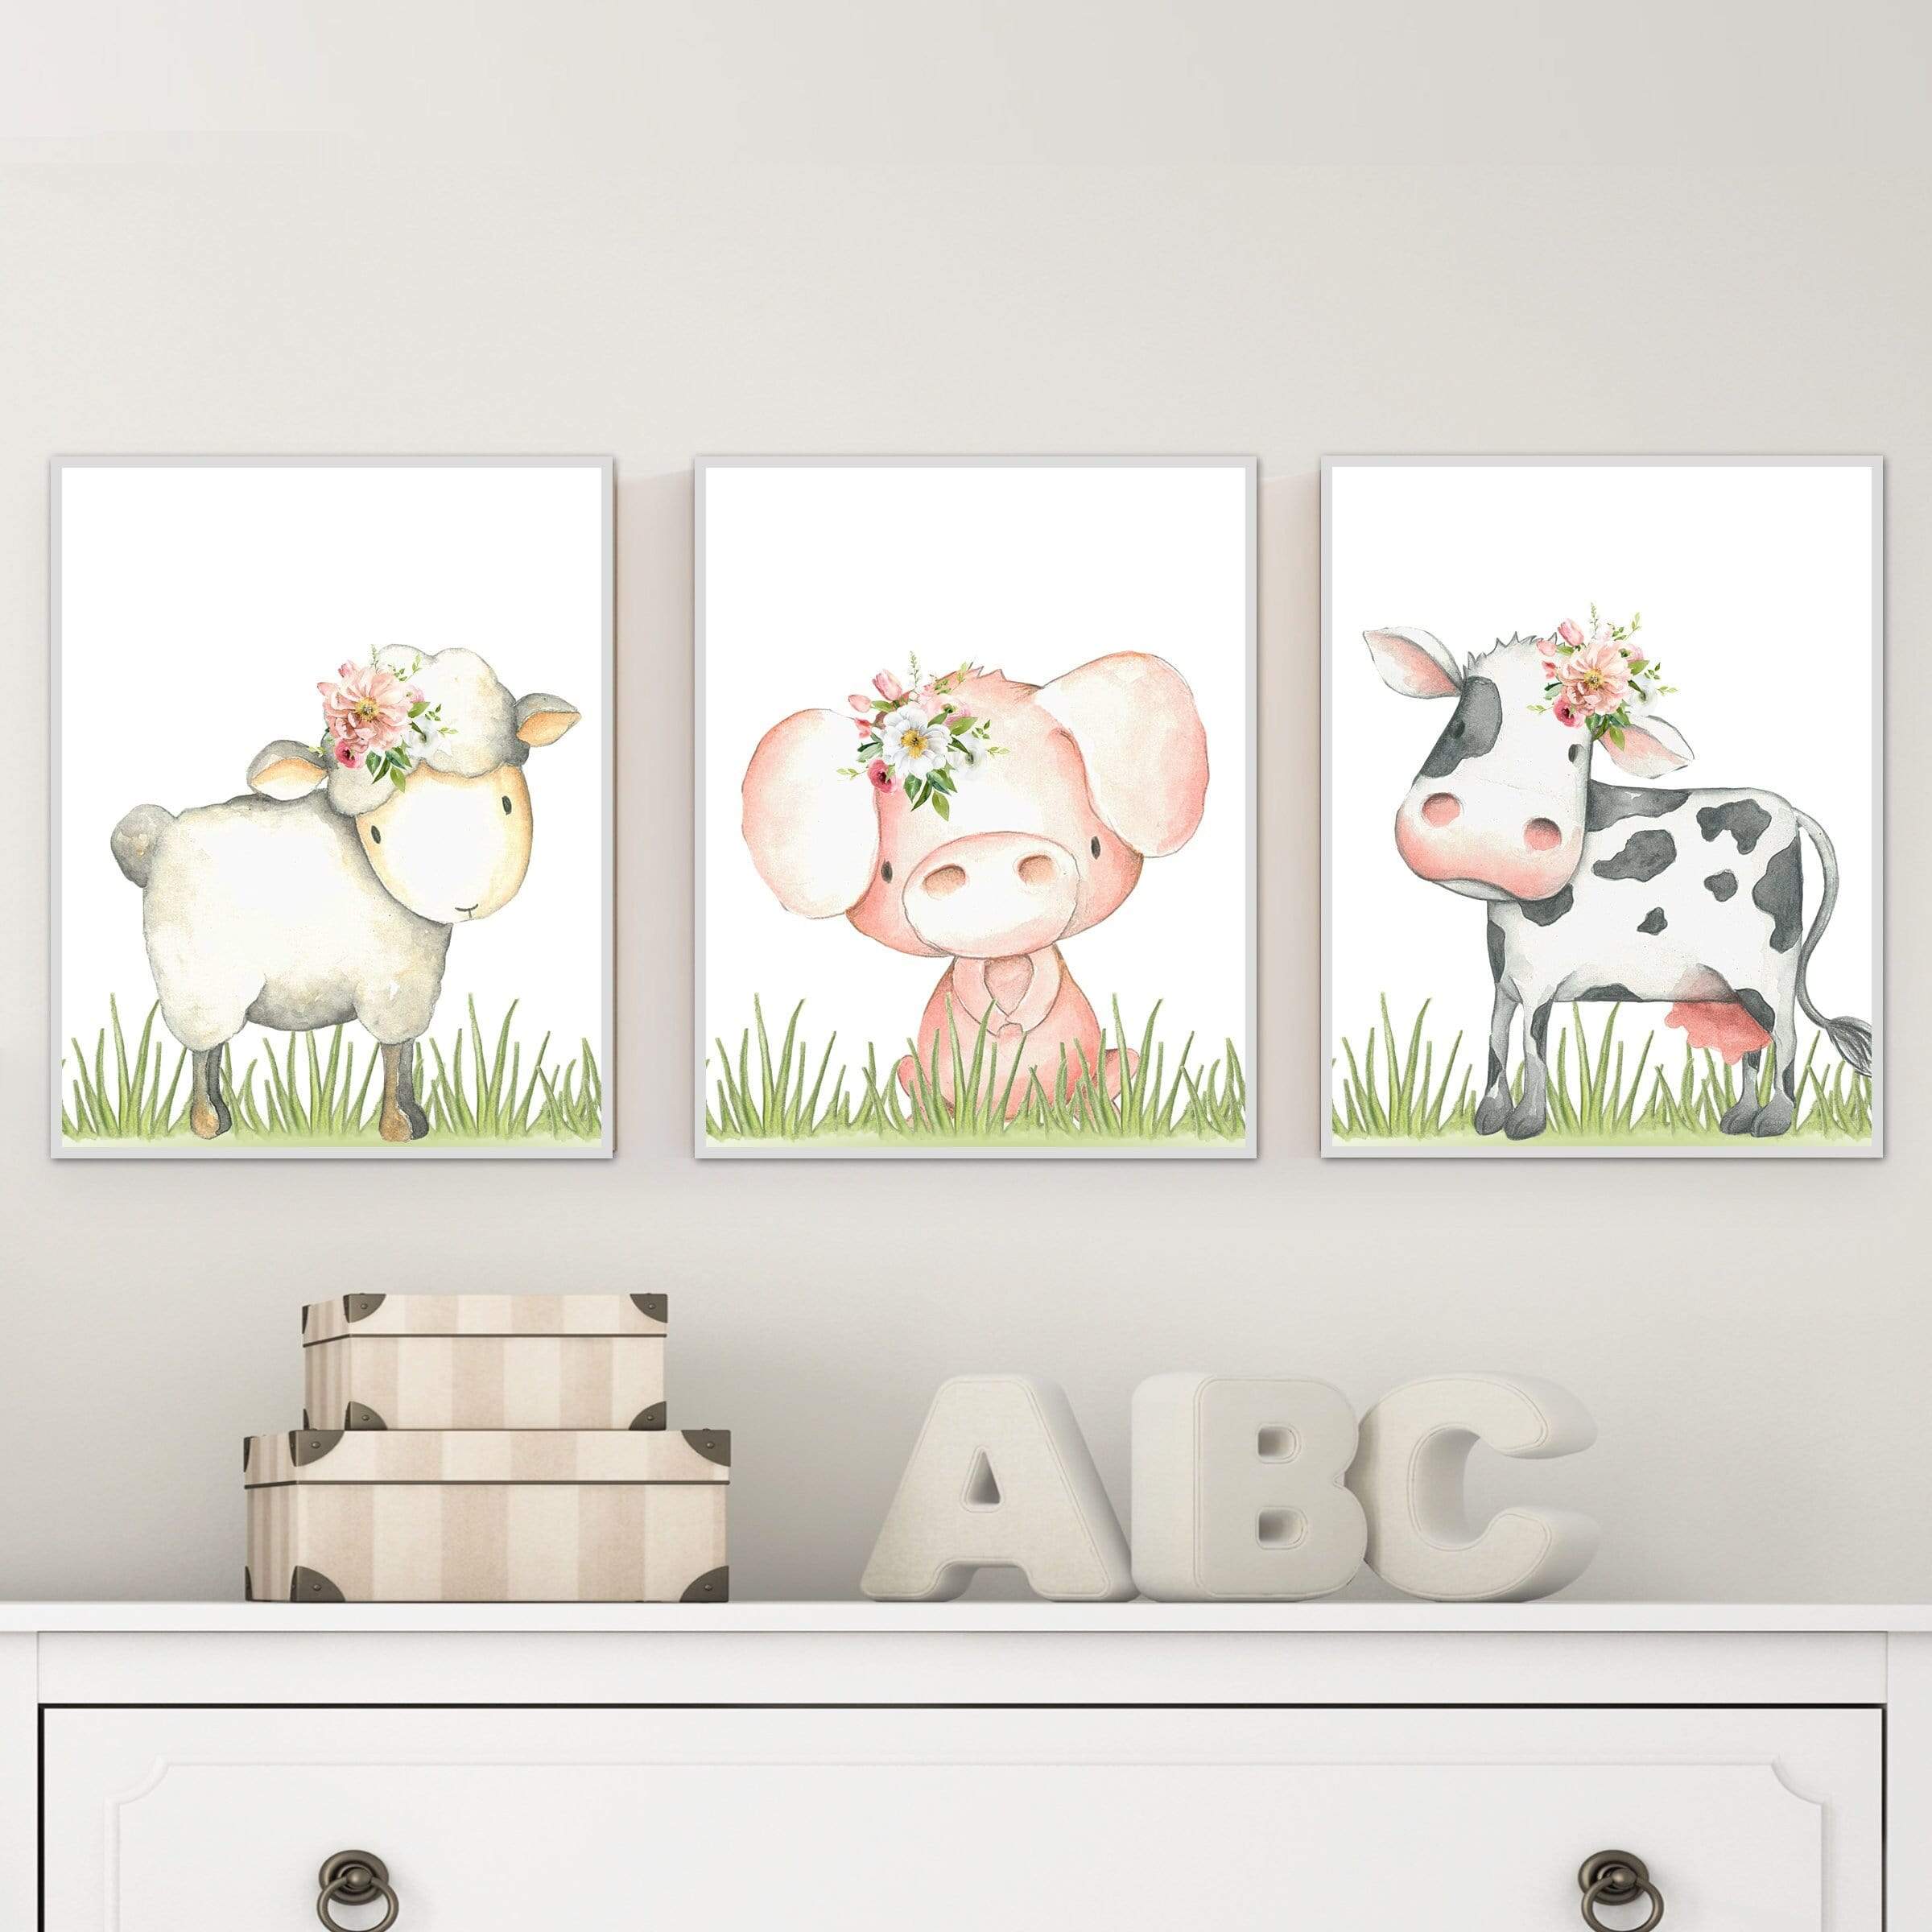 Girl farm nursery decor - Girl nursery wall art - Farm animal prints - Printable farm animals - Flower crown animals - Nursery animals nursery art print baby nursery bedroom decor